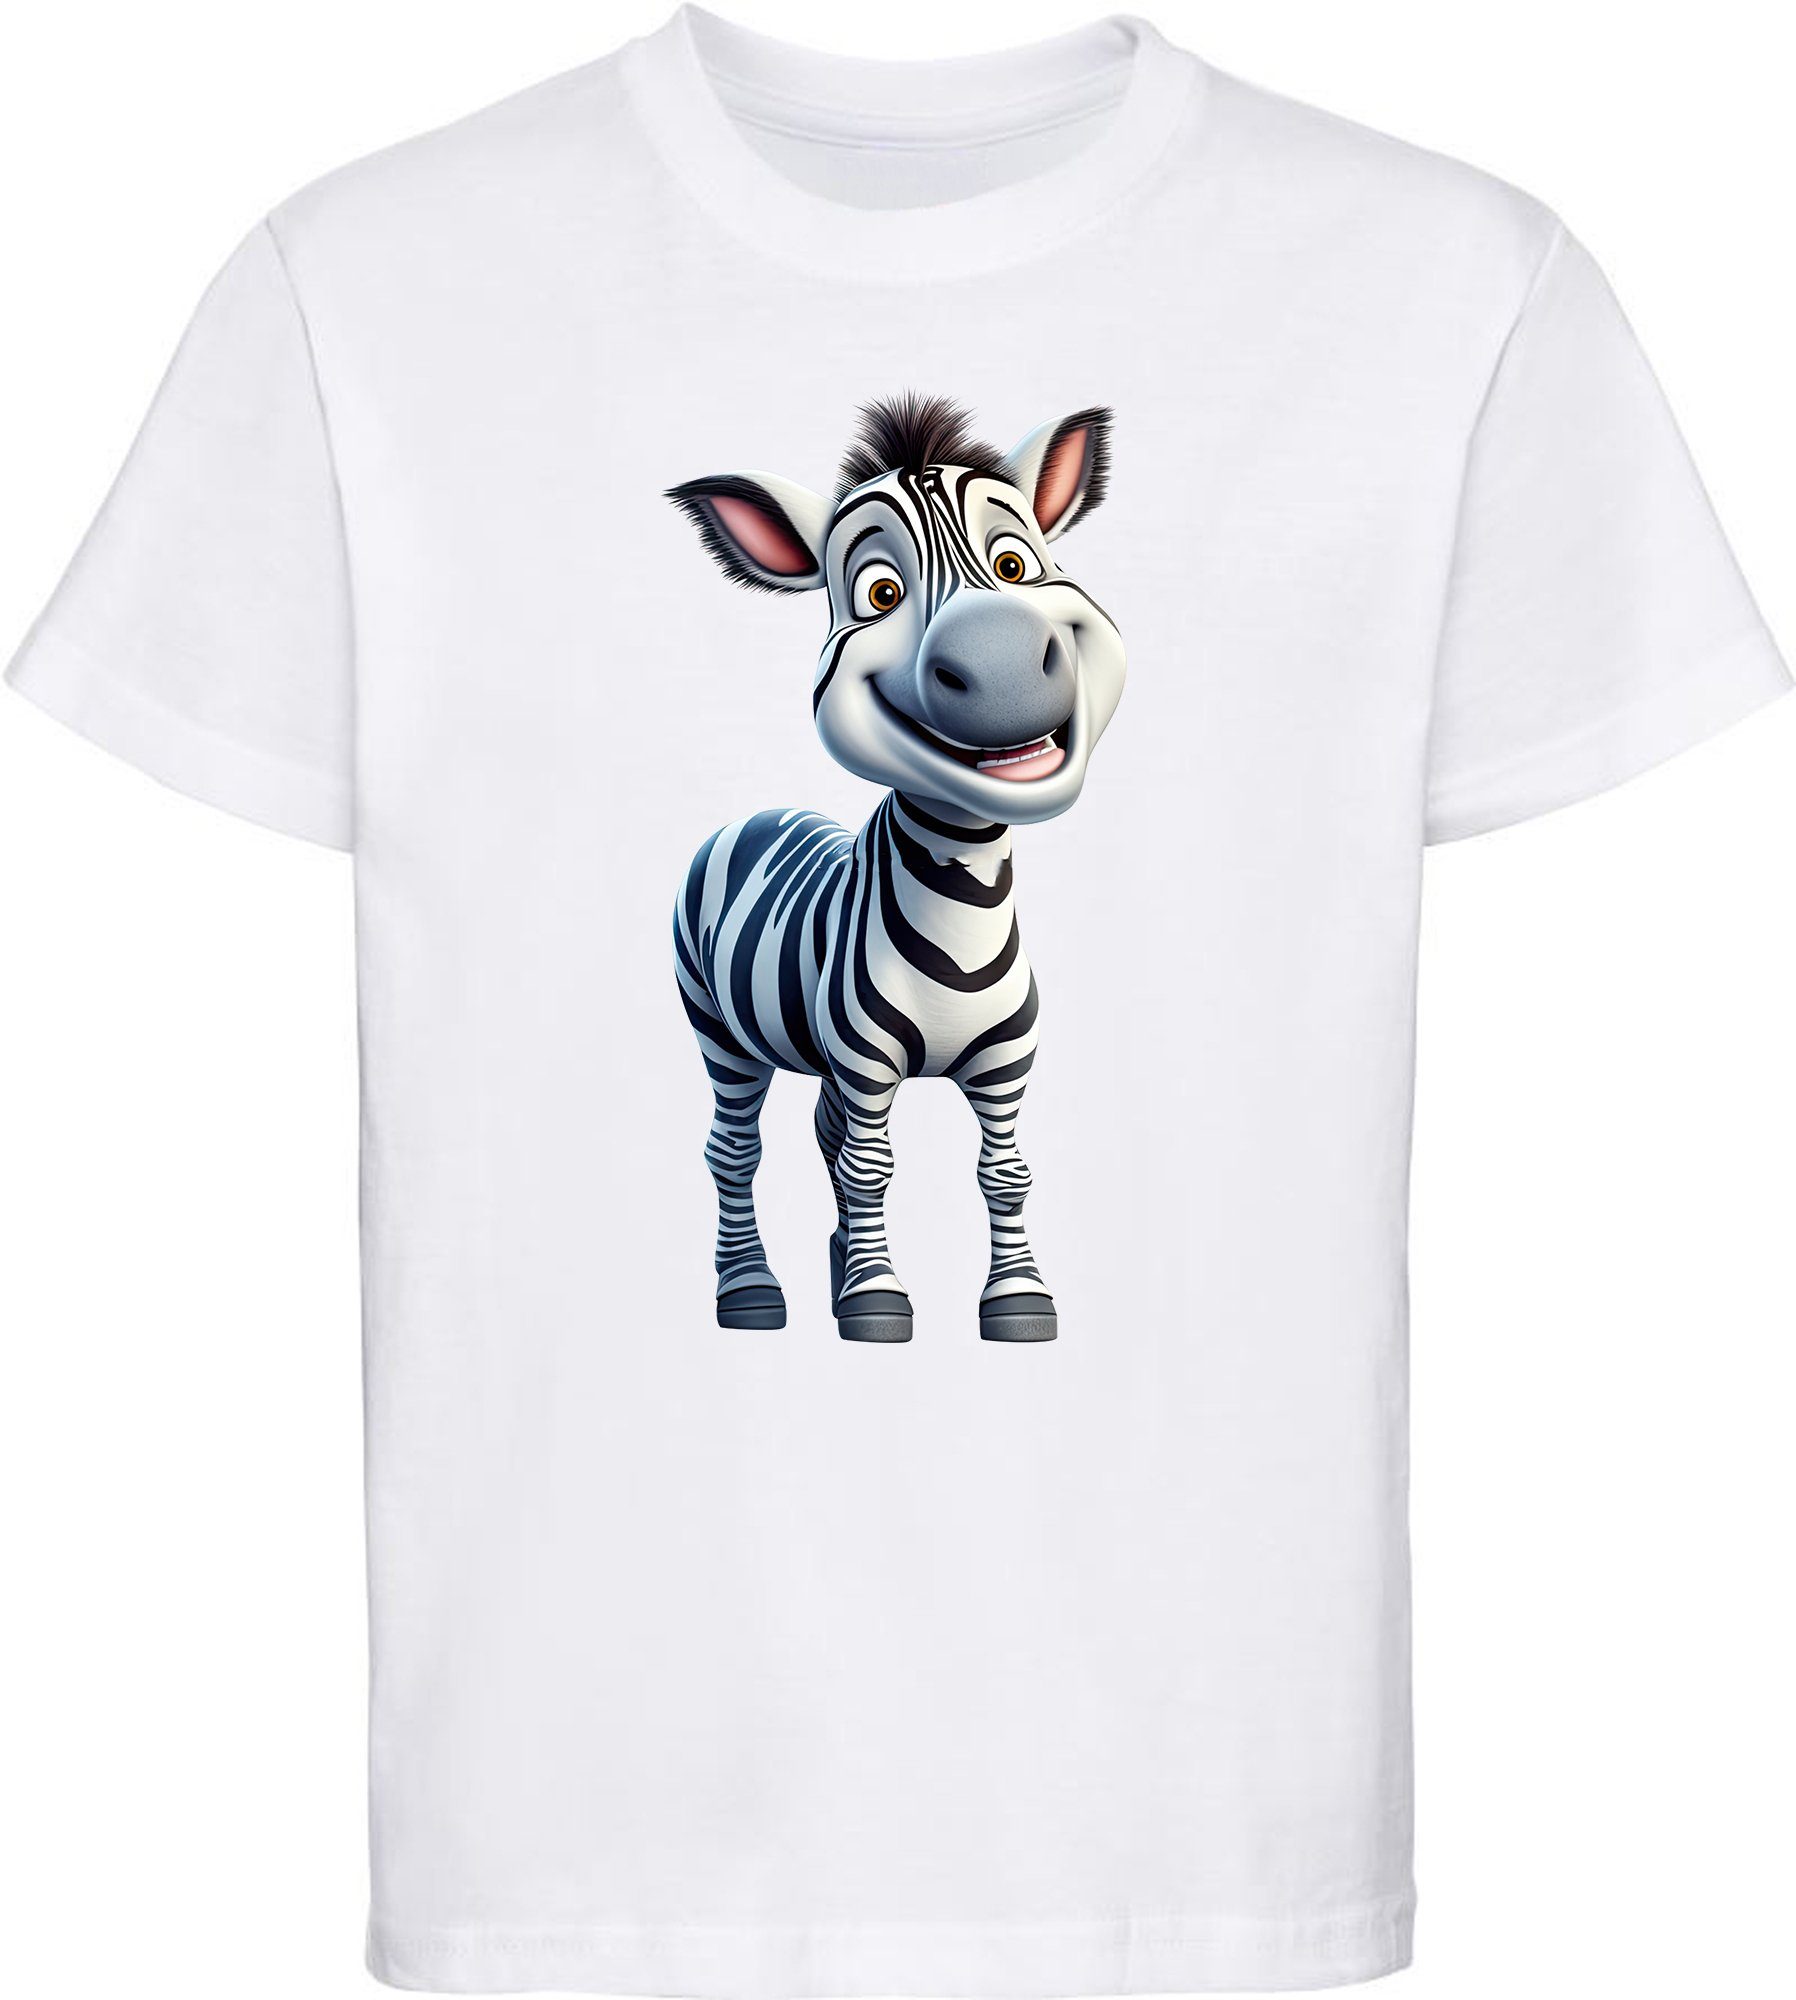 MyDesign24 T-Shirt Kinder Wildtier Print weiss - mit Baumwollshirt Baby Zebra Aufdruck, i280 bedruckt Shirt